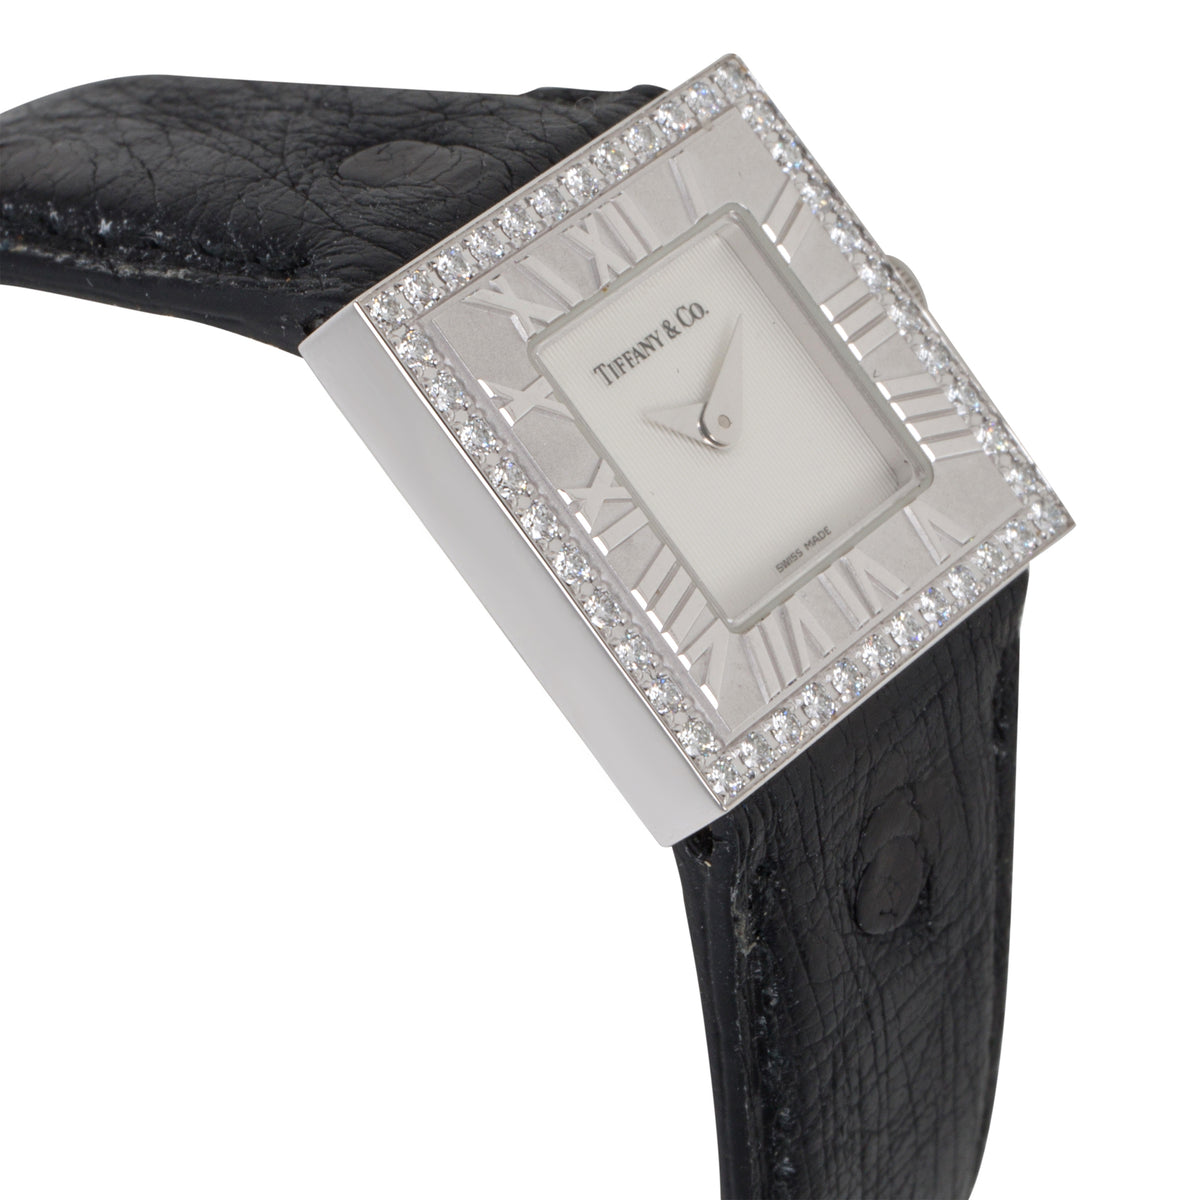 Tiffany & Co. Atlas Atlas Women's Watch in 18kt White Gold